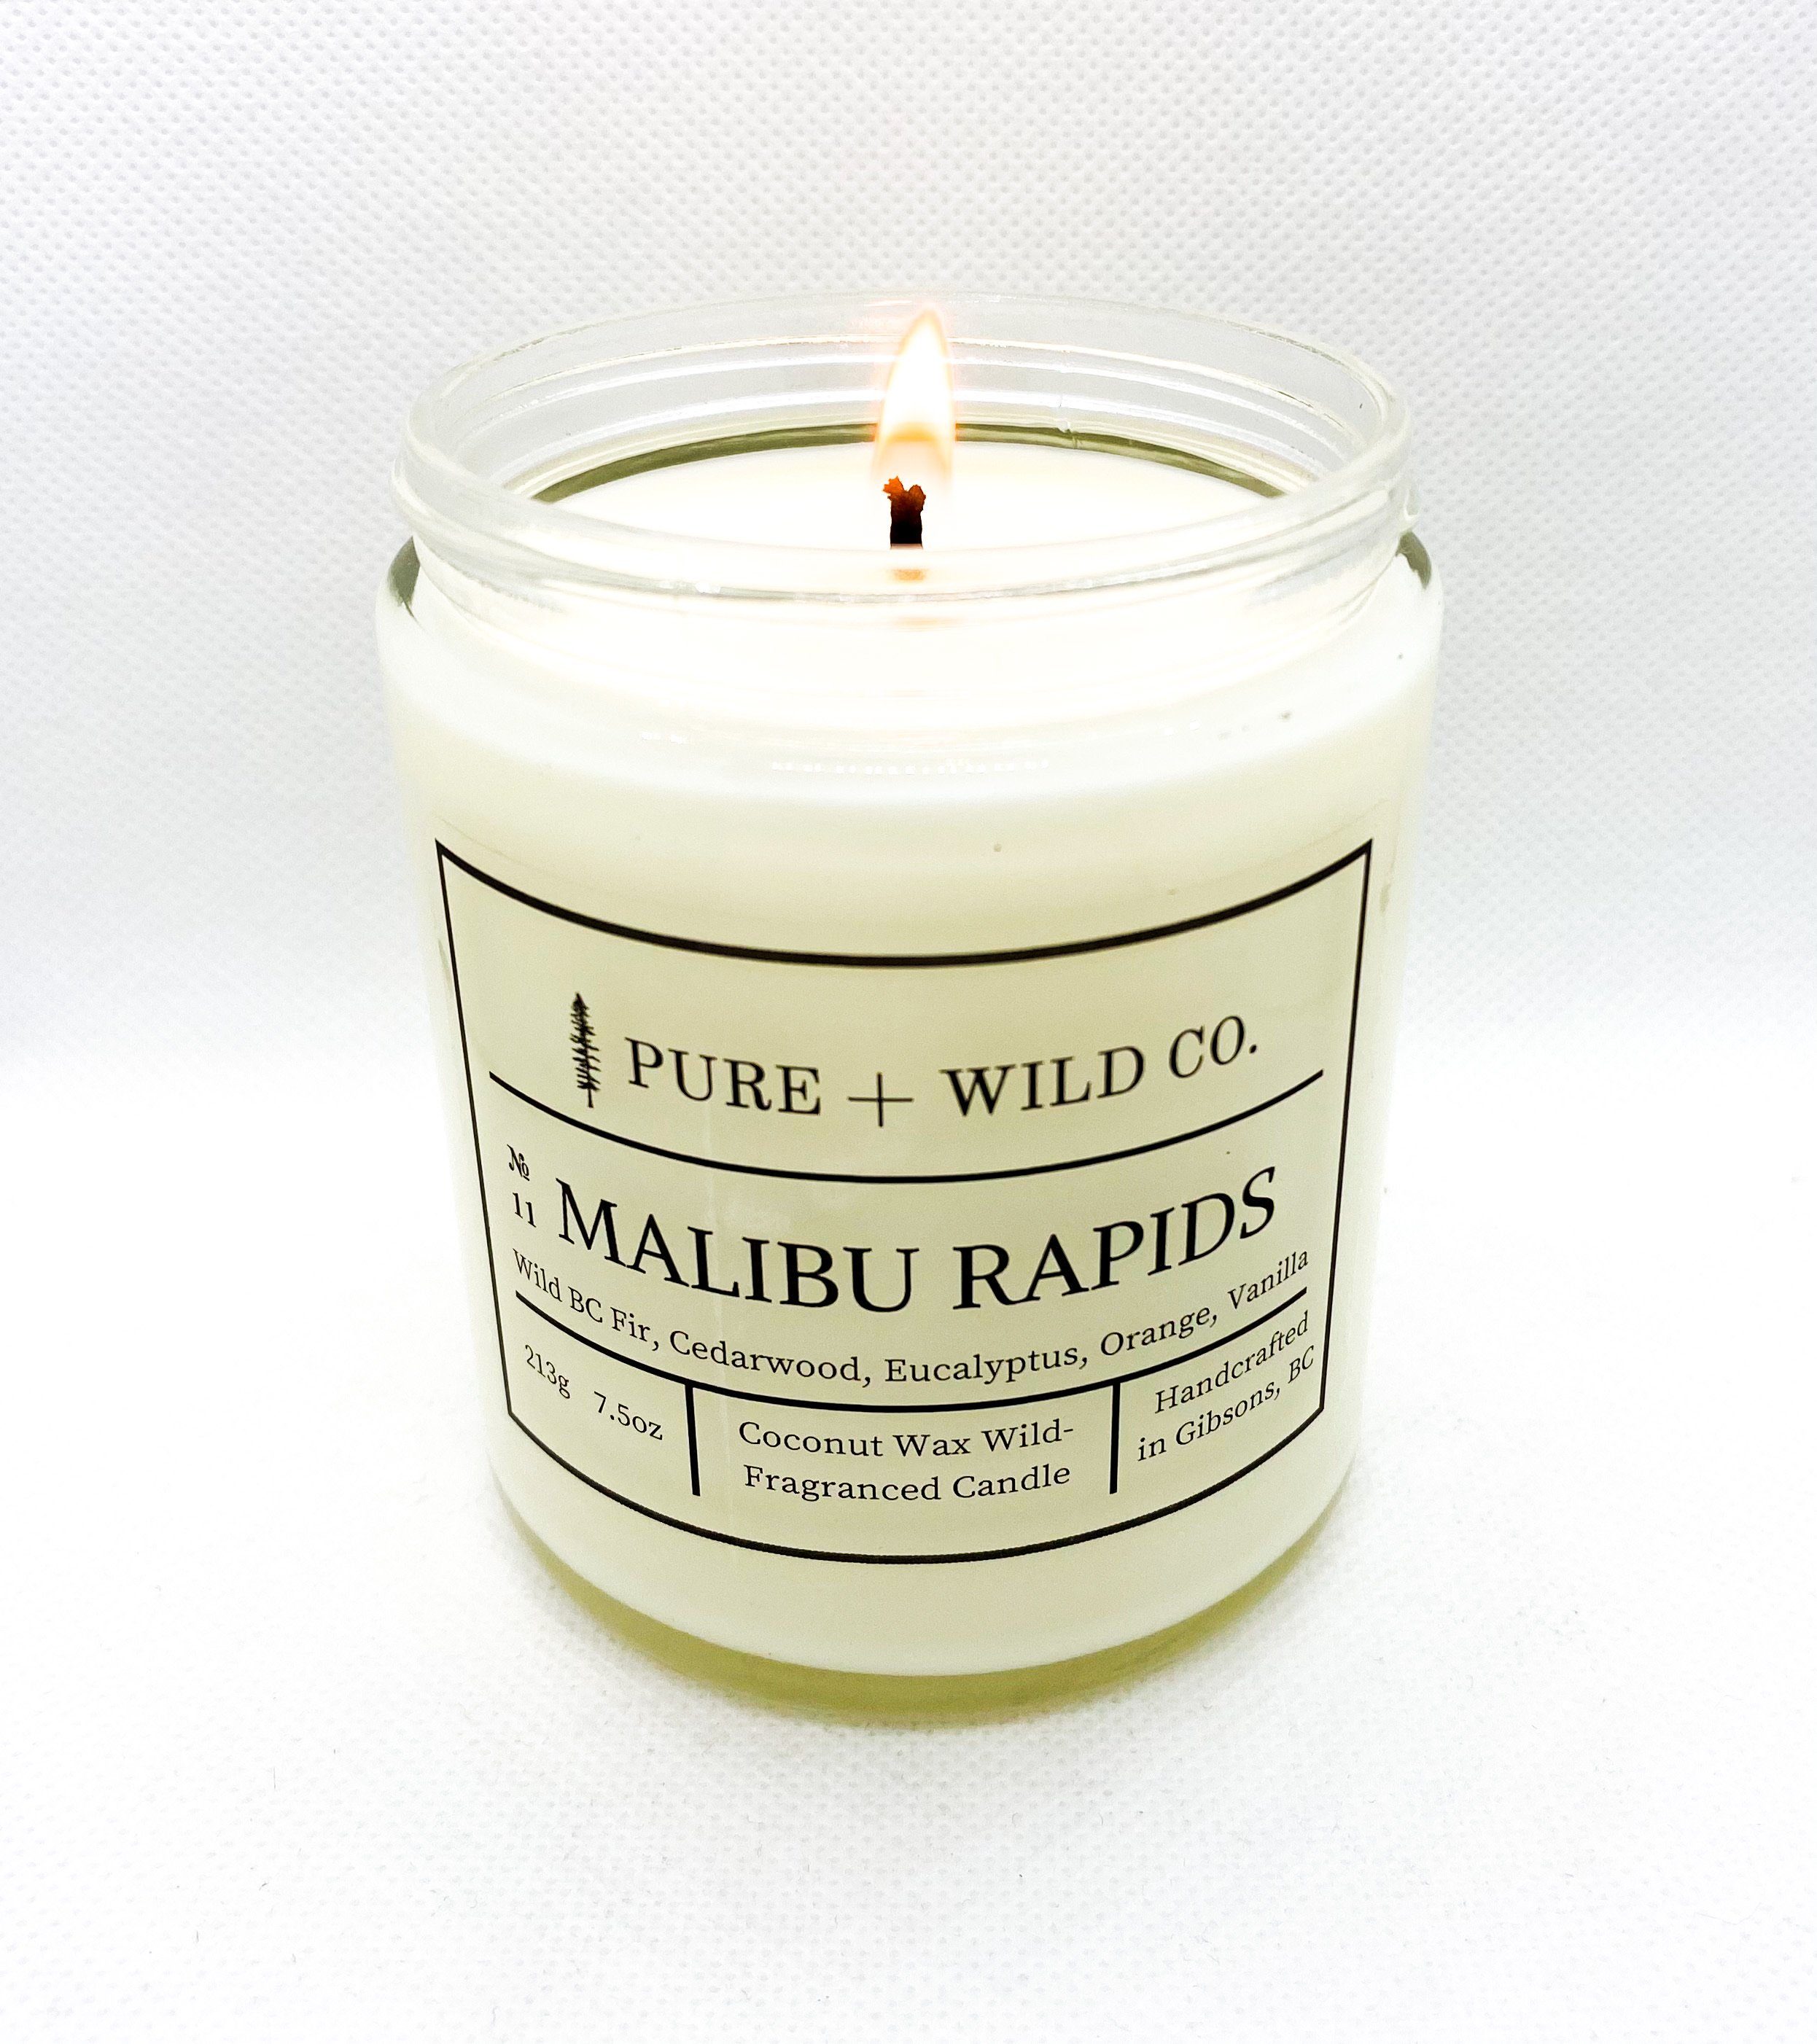 № 11 MALIBU RAPIDS - Fir, Cedarwood, Eucalyptus, Orange, Vanilla PURE + WILD CO. Cotton Wick 